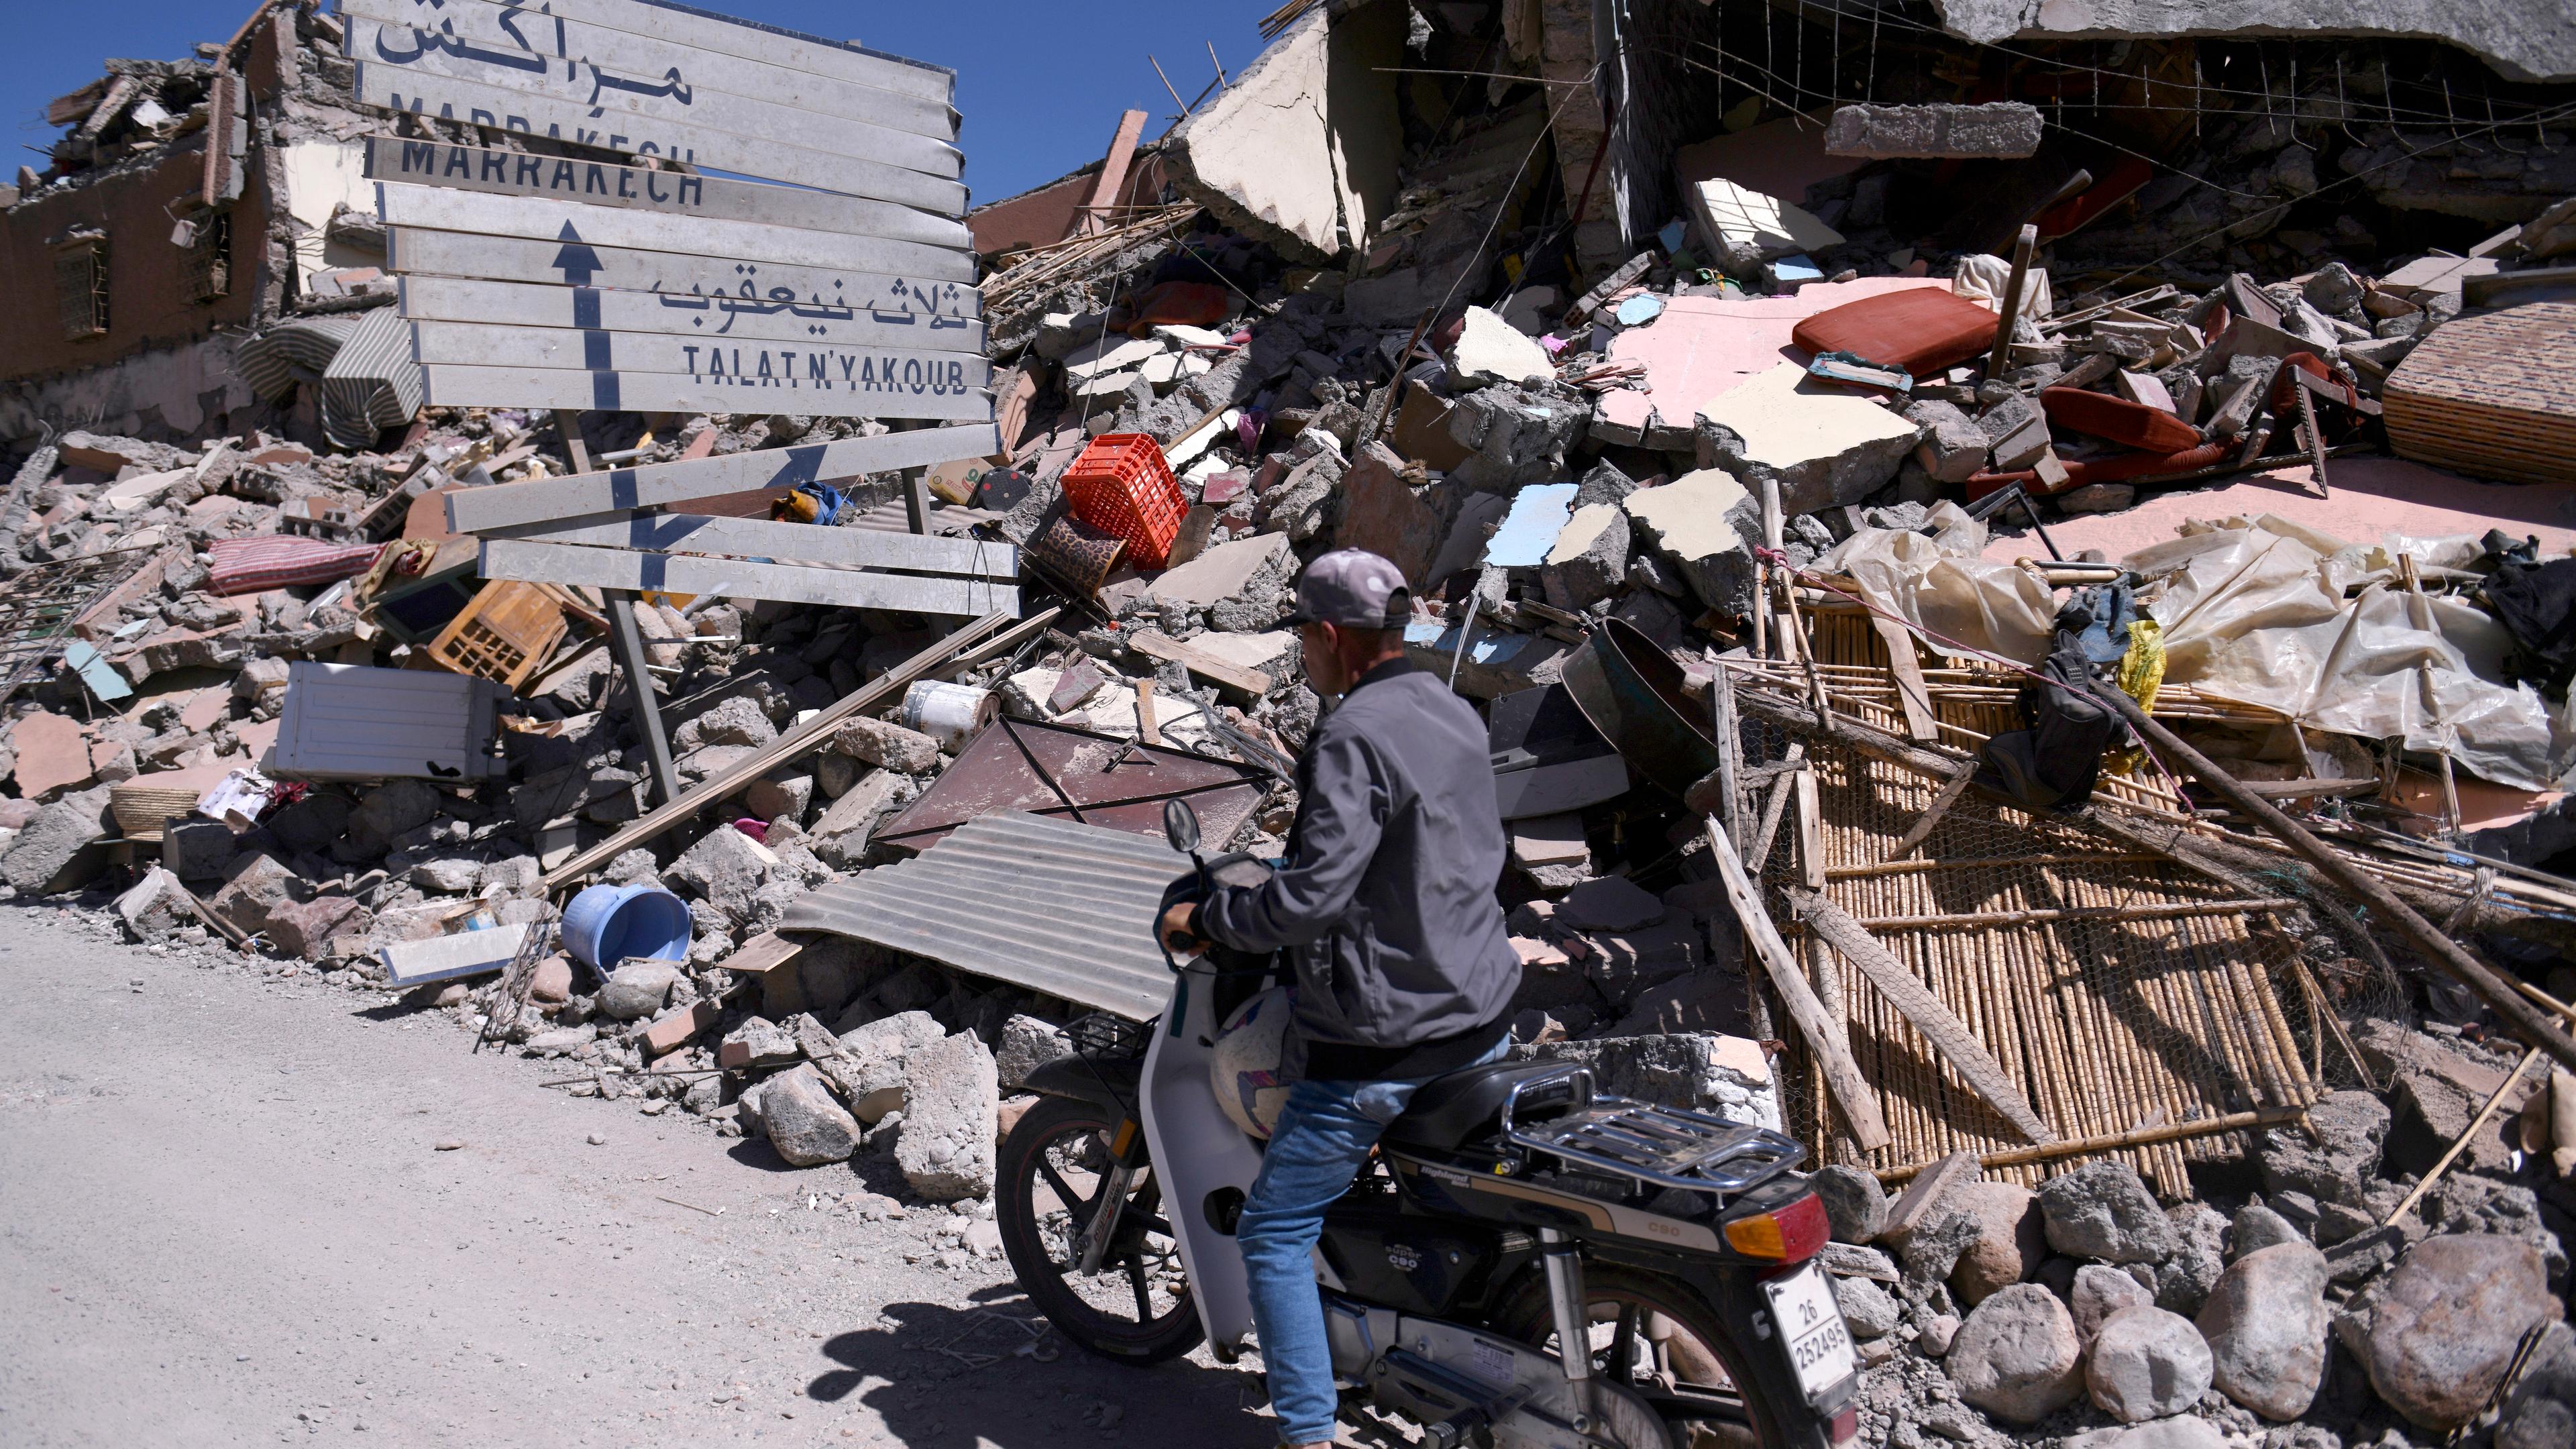 Marokko, Talat N'yakoub: Ein Mann auf einem Motorroller fährt an Trümmern und einem beschädigten Straßenschild vorbei